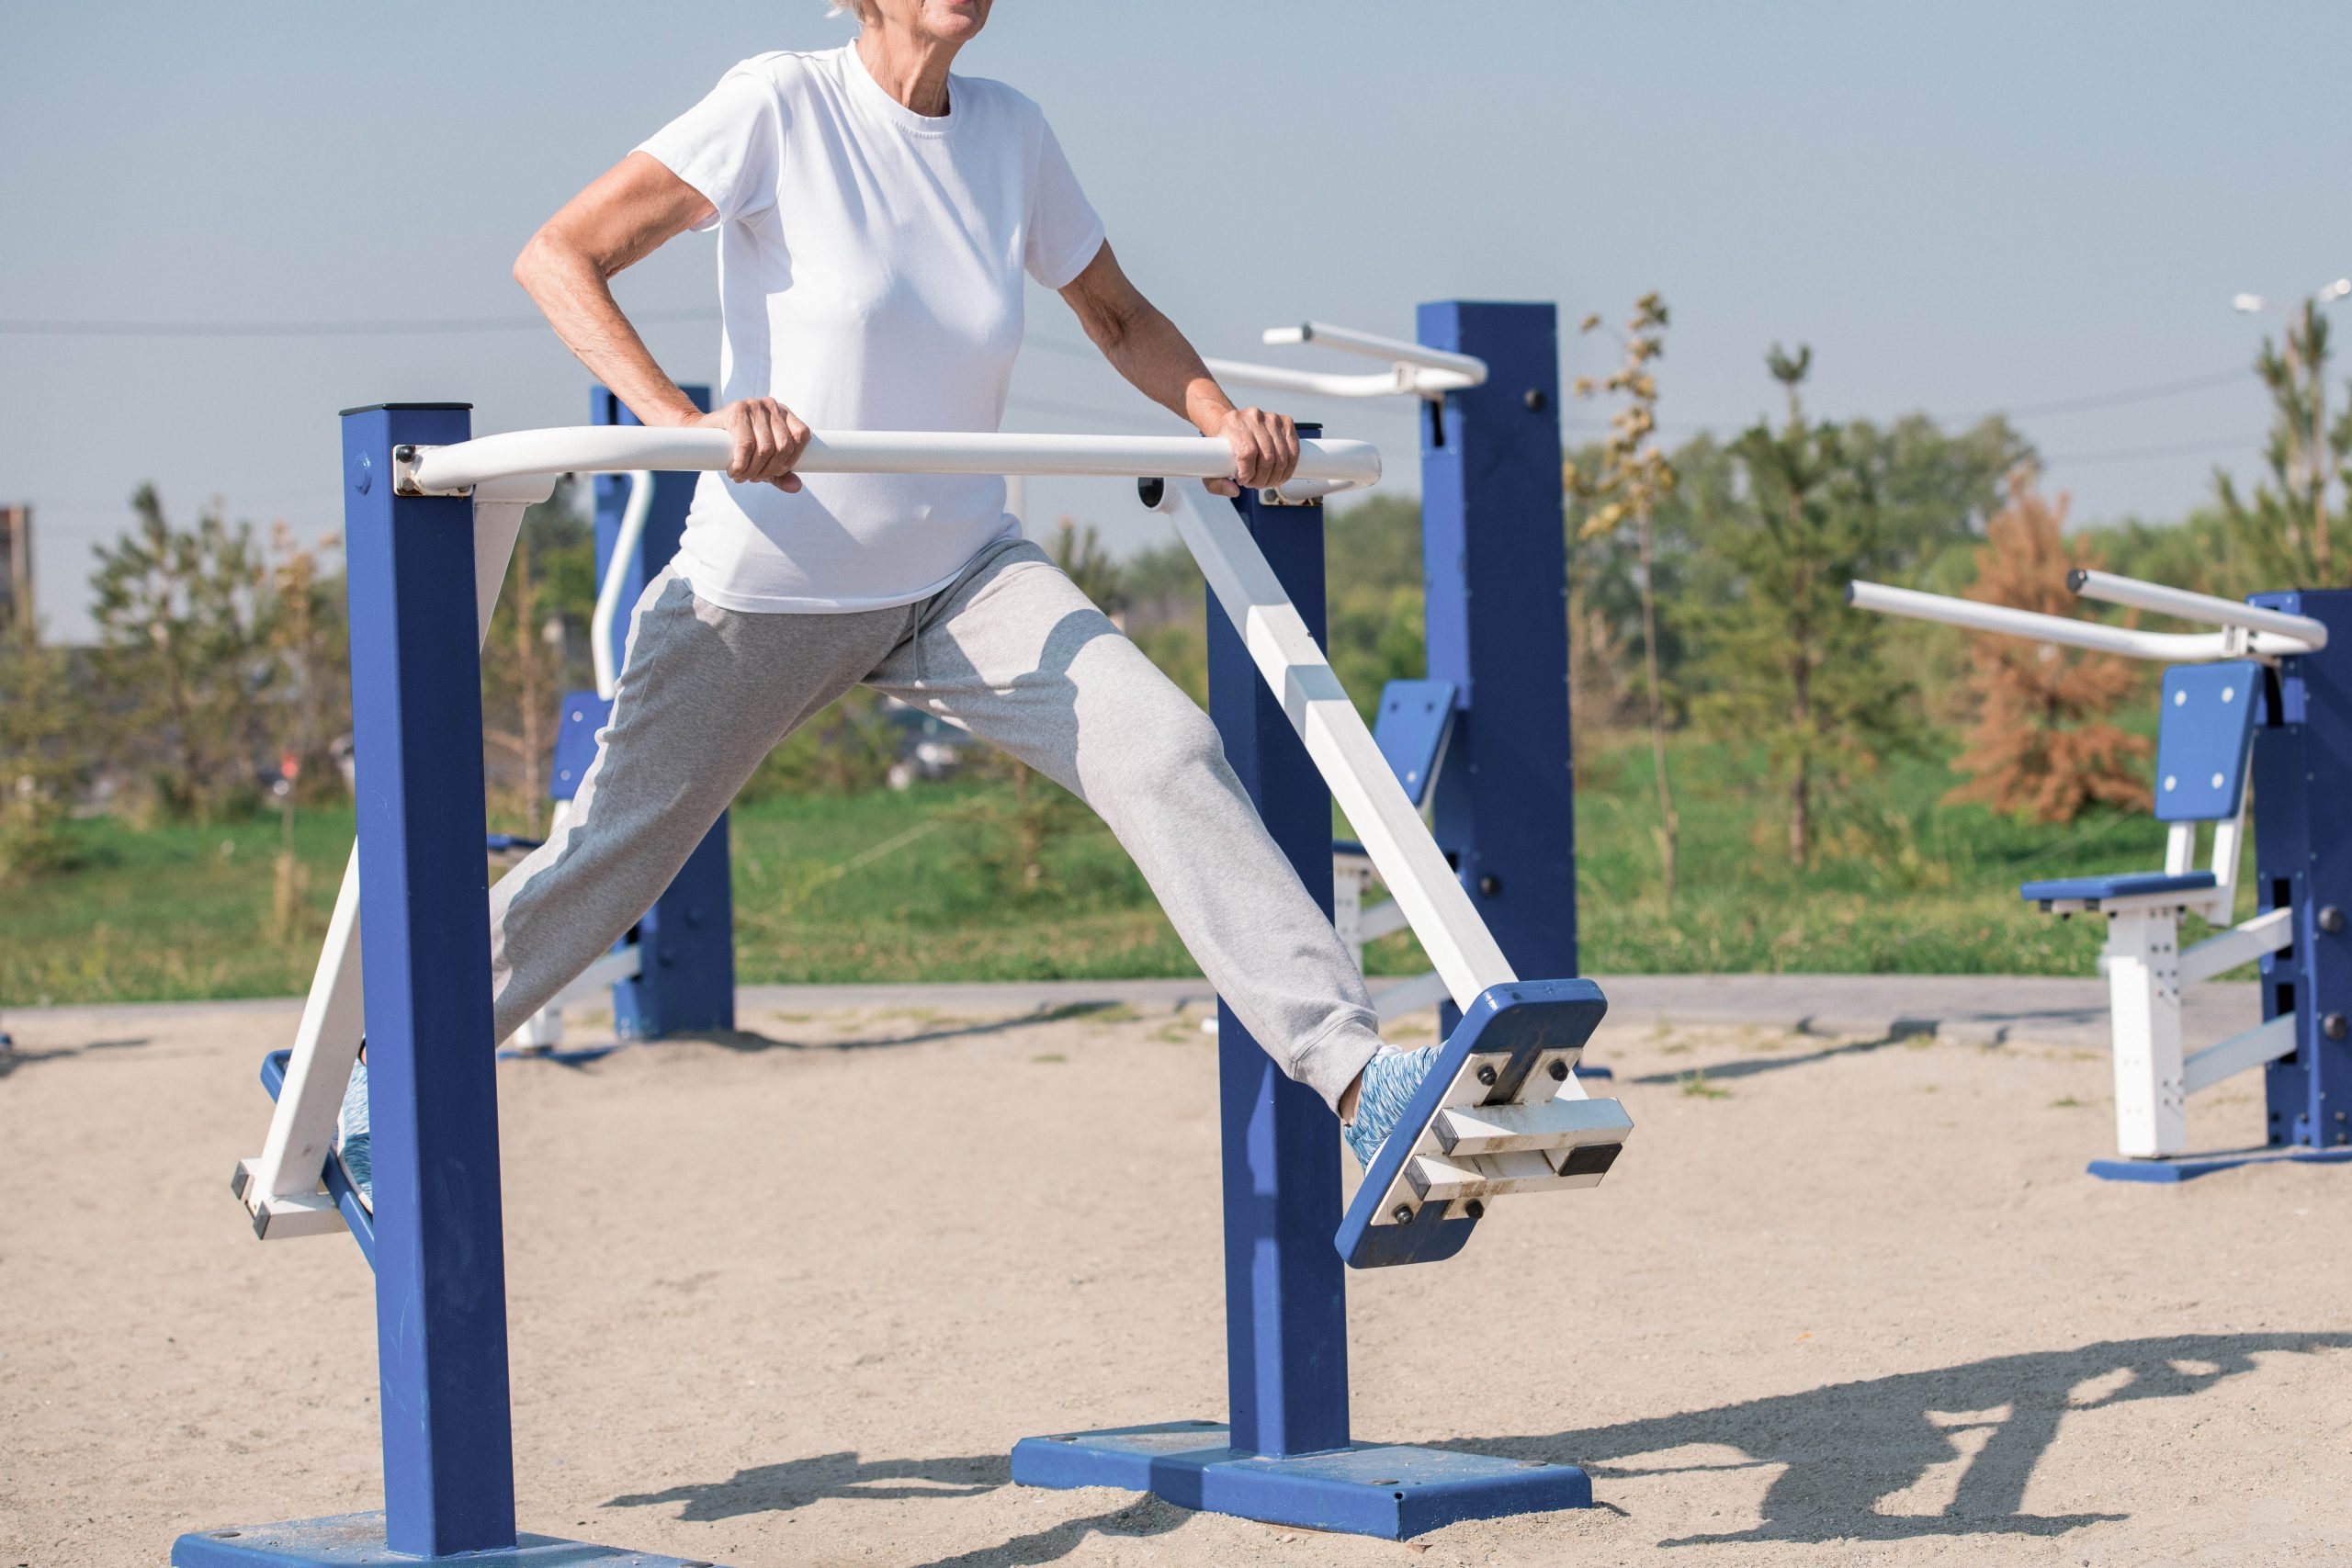 .אישה מתעמלת על גבי מכשיר לפעילות גופנית שנמצא בפארק